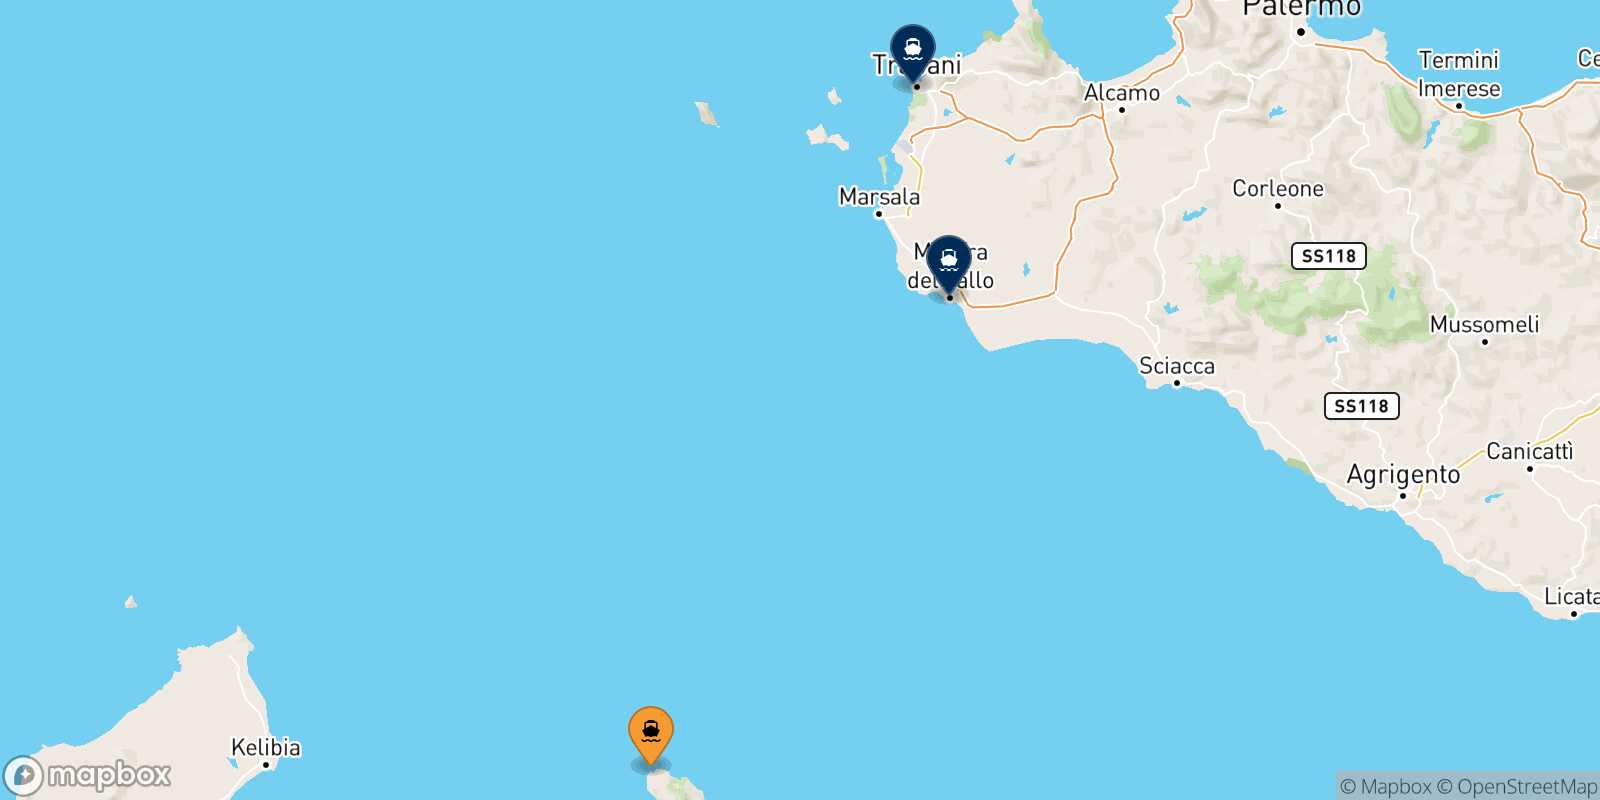 Mappa delle destinazioni raggiungibili da Pantelleria